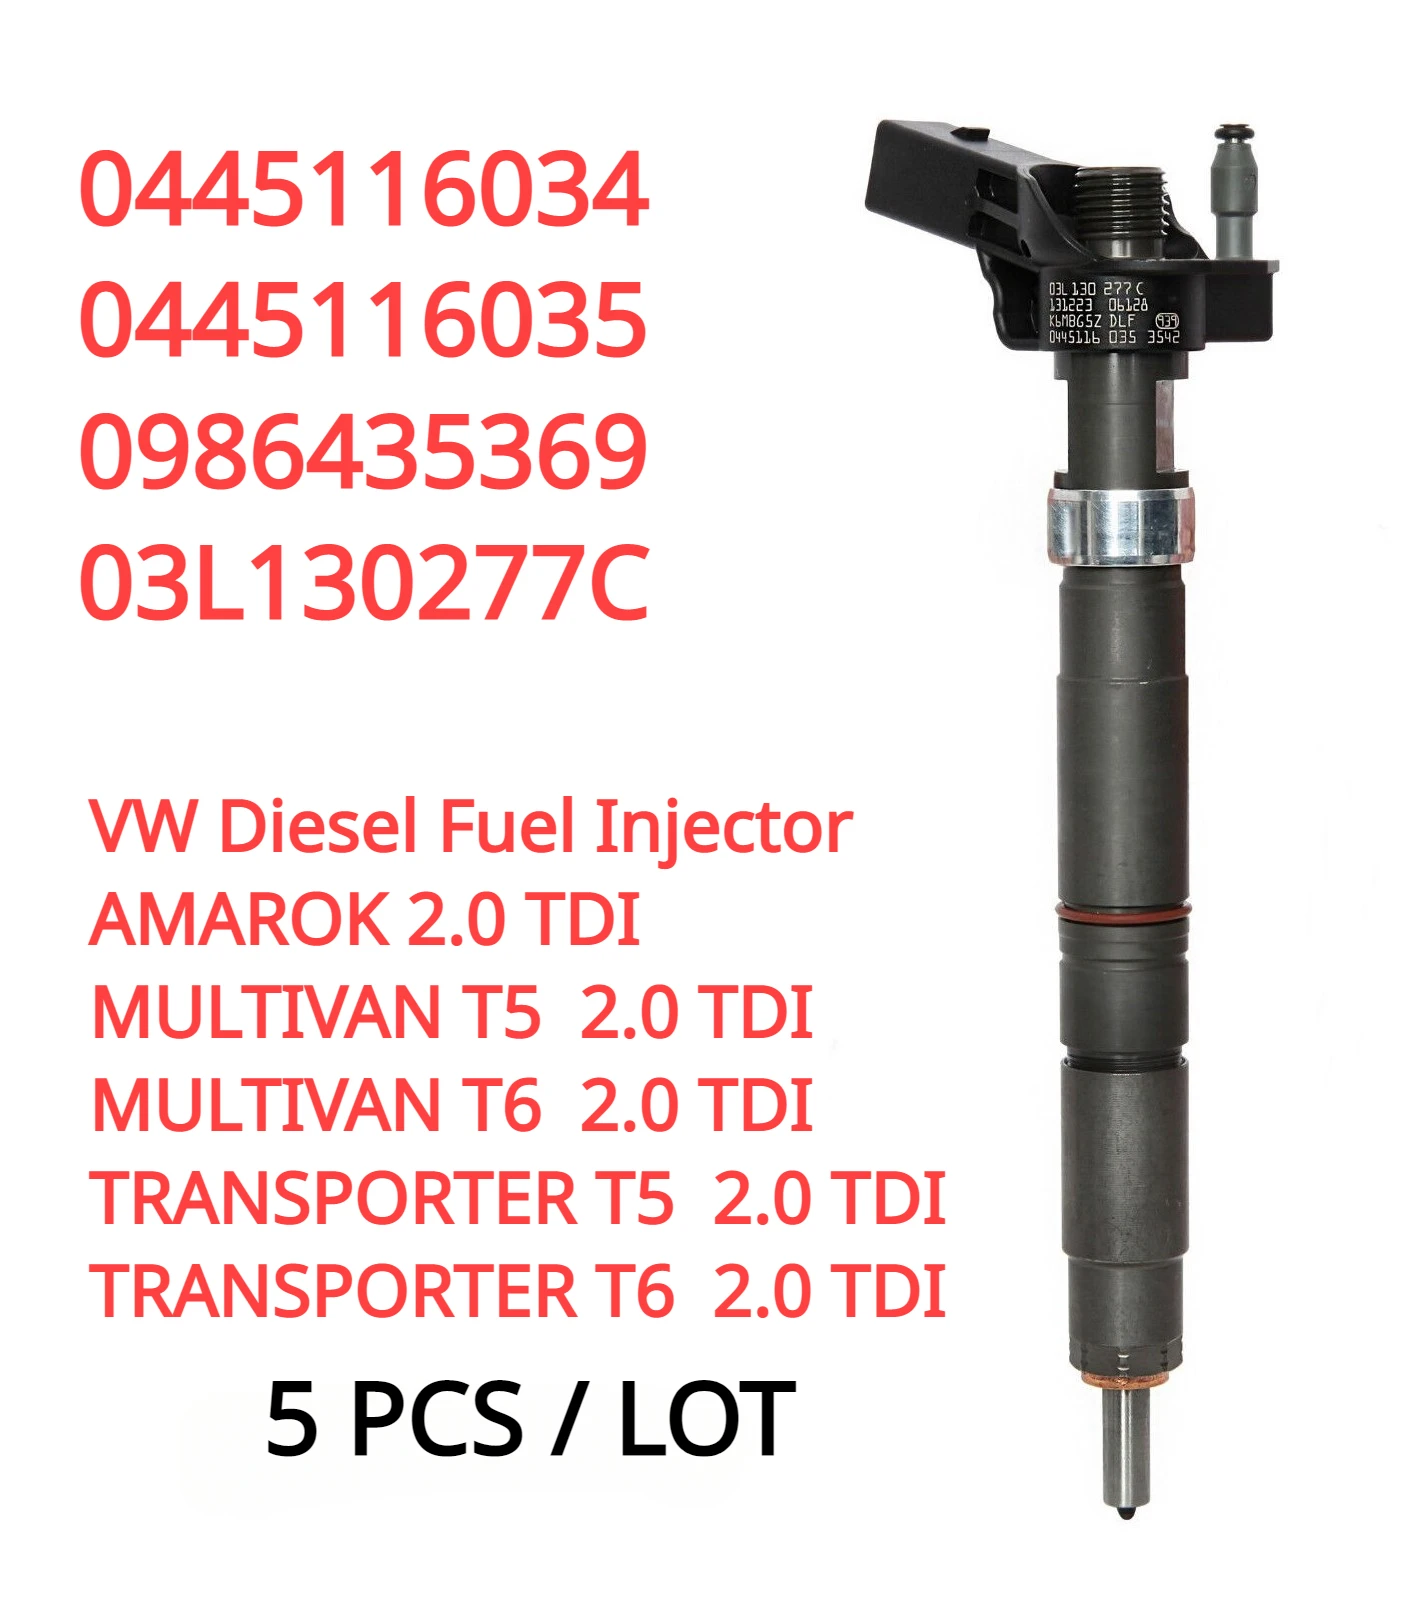 

5PCS 0445116035 0445116034 03L130277C New Fuel Injector Nozzle For Bosch VW T5 T6 AMAROK Multivan Transporter 2.0 TDI